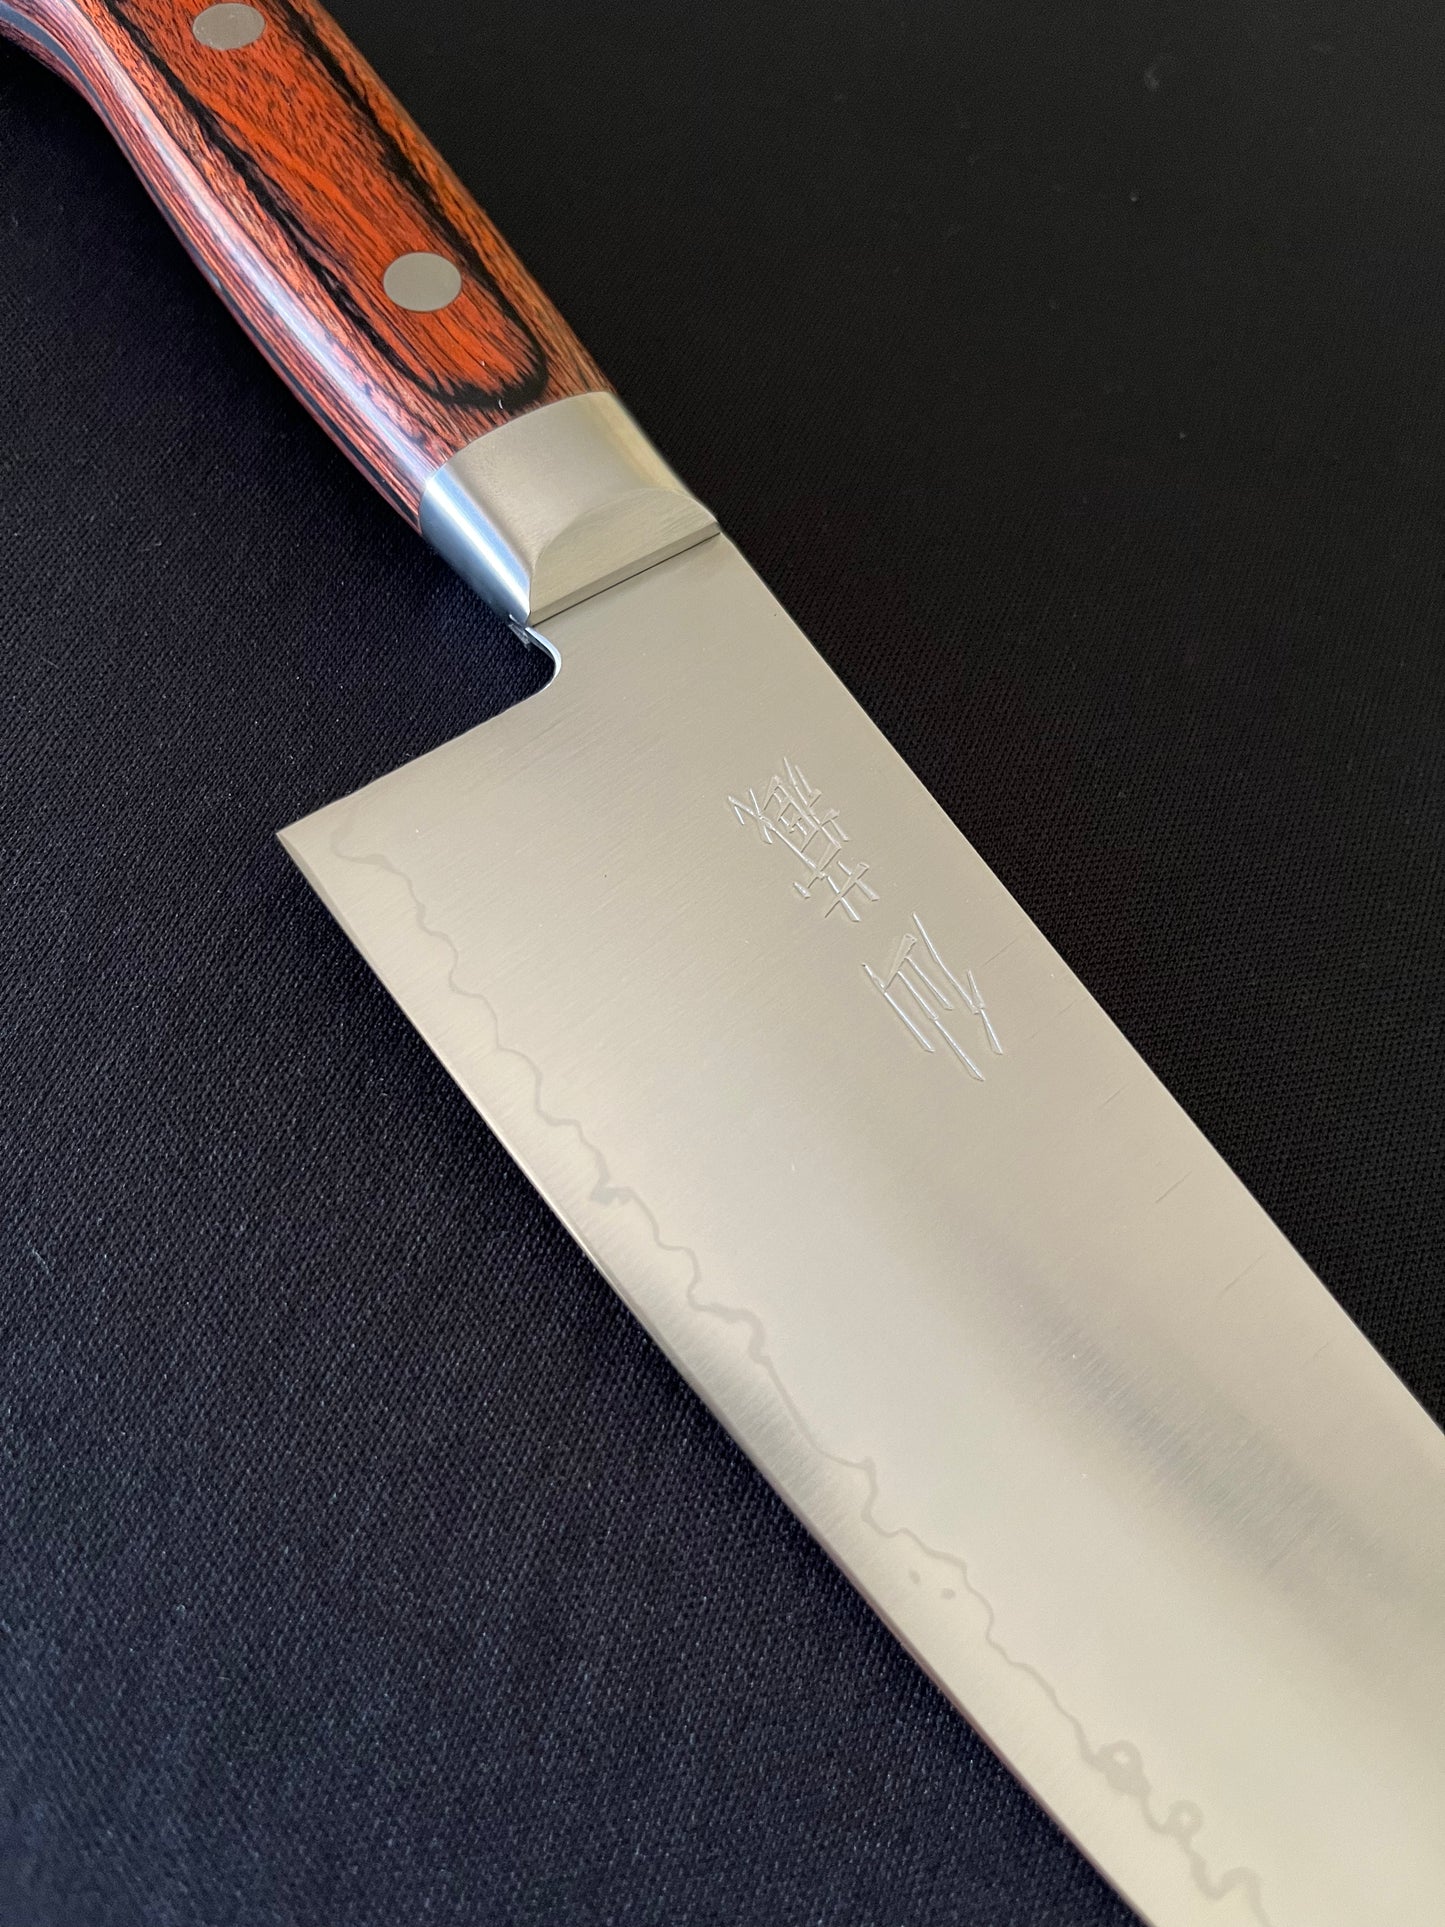 Cuchillo Japones Clad Santoku